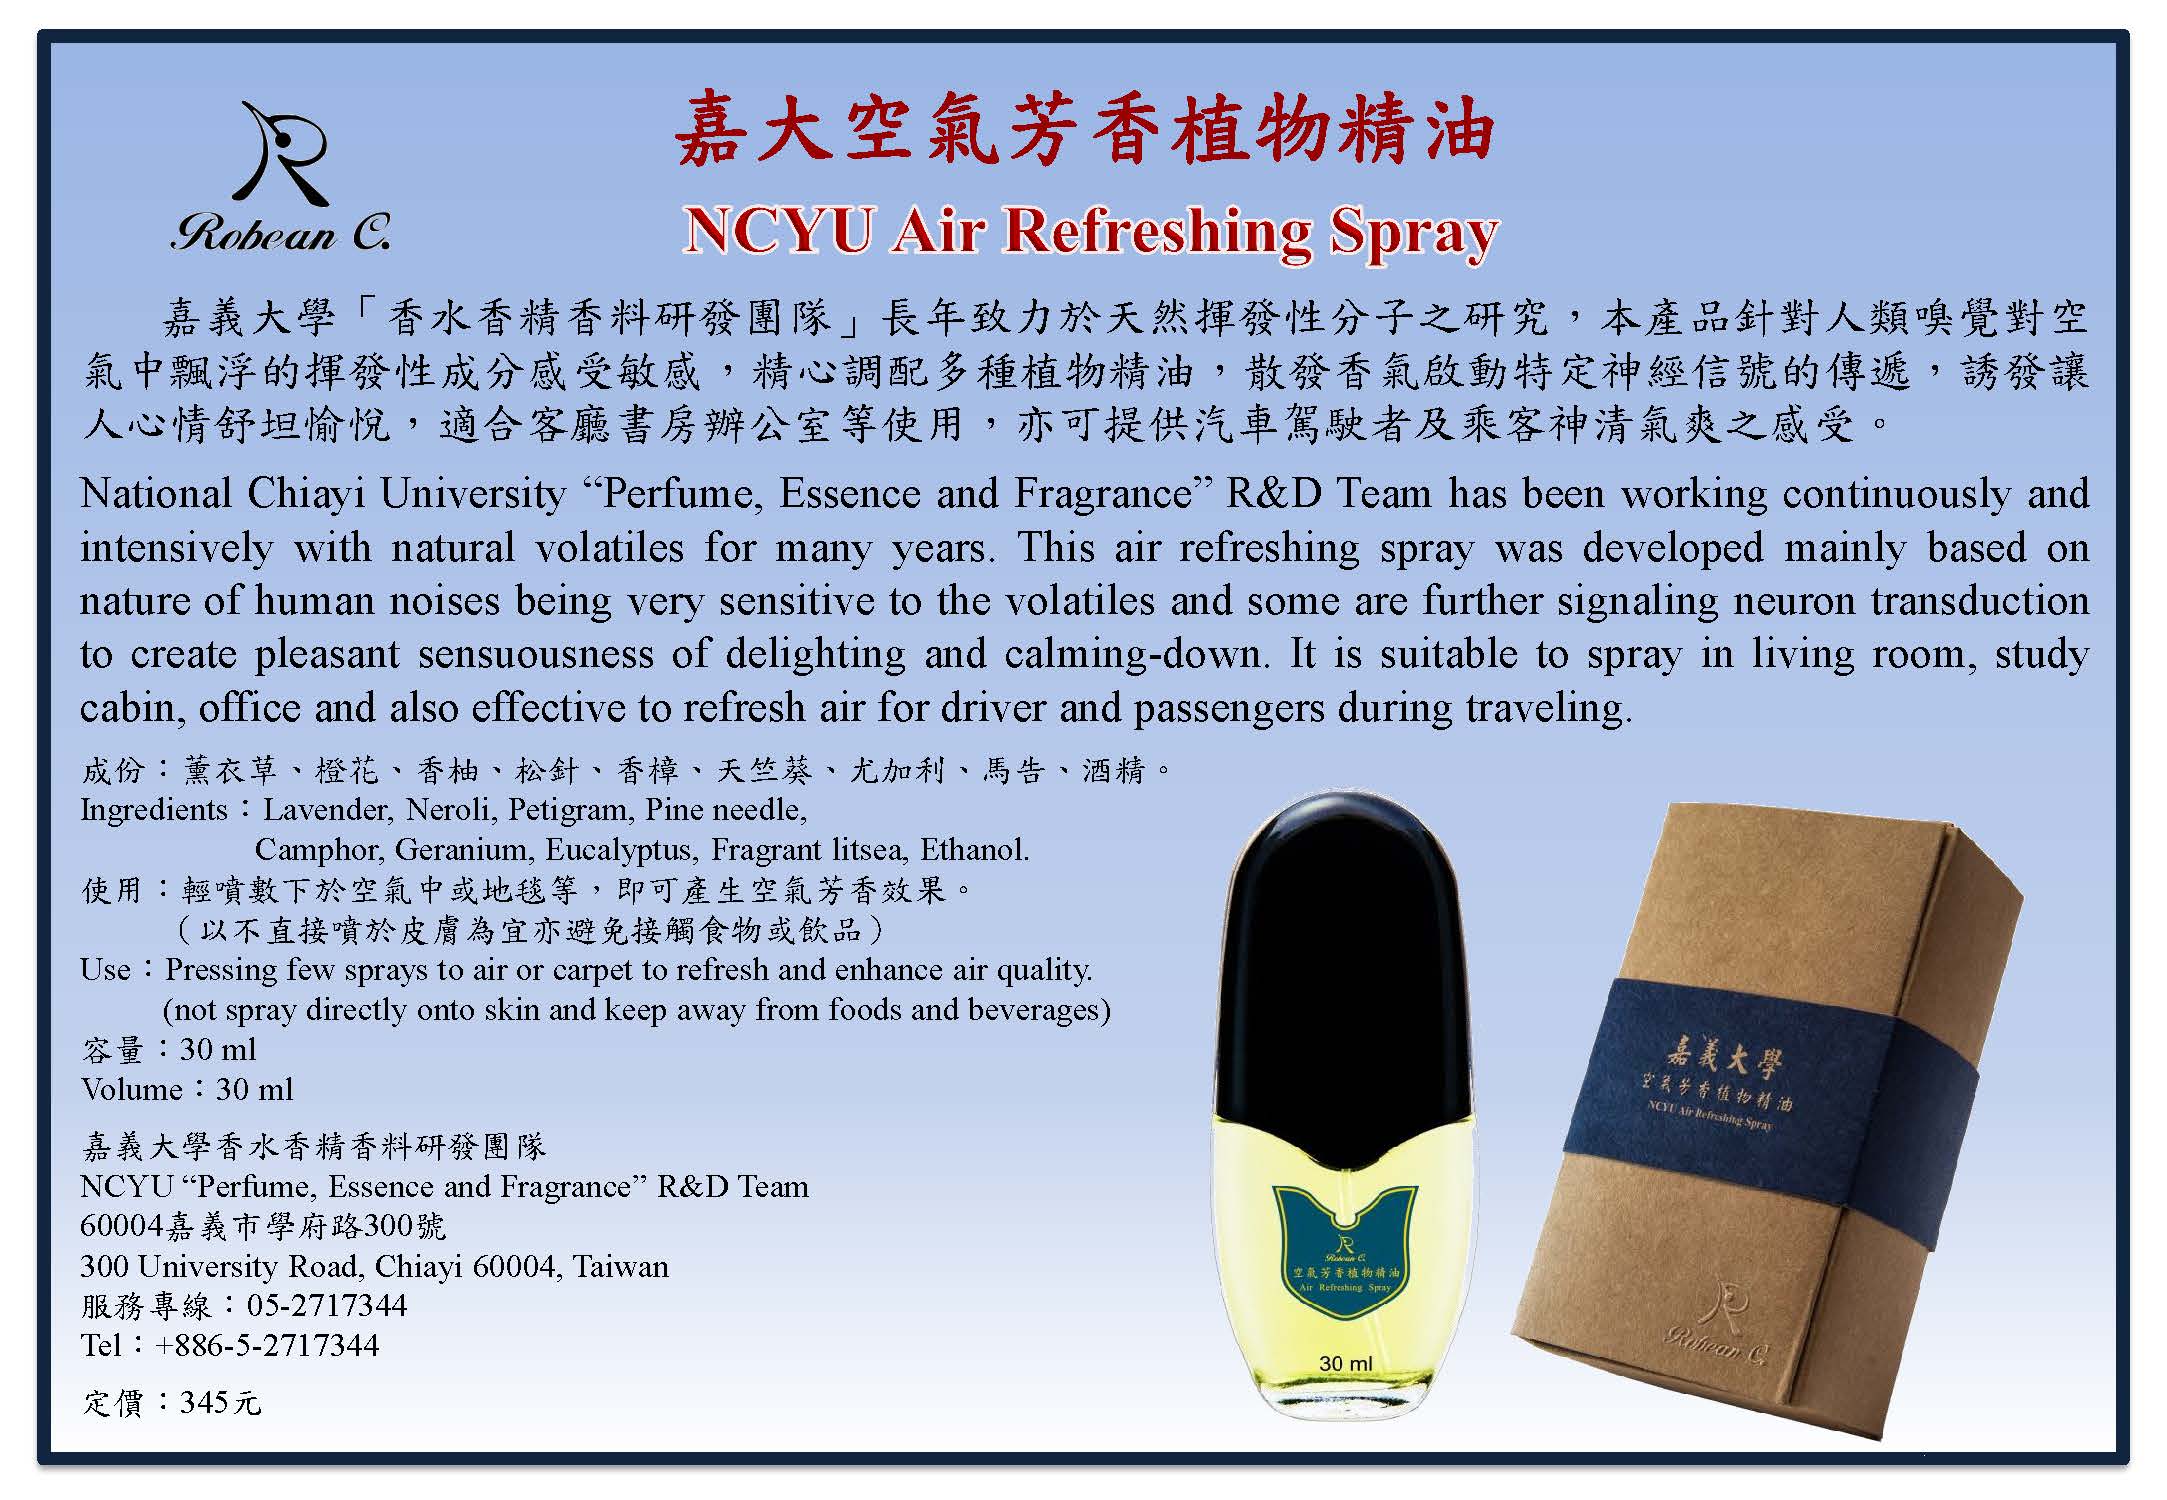 NCYU Air Refreshing Spray